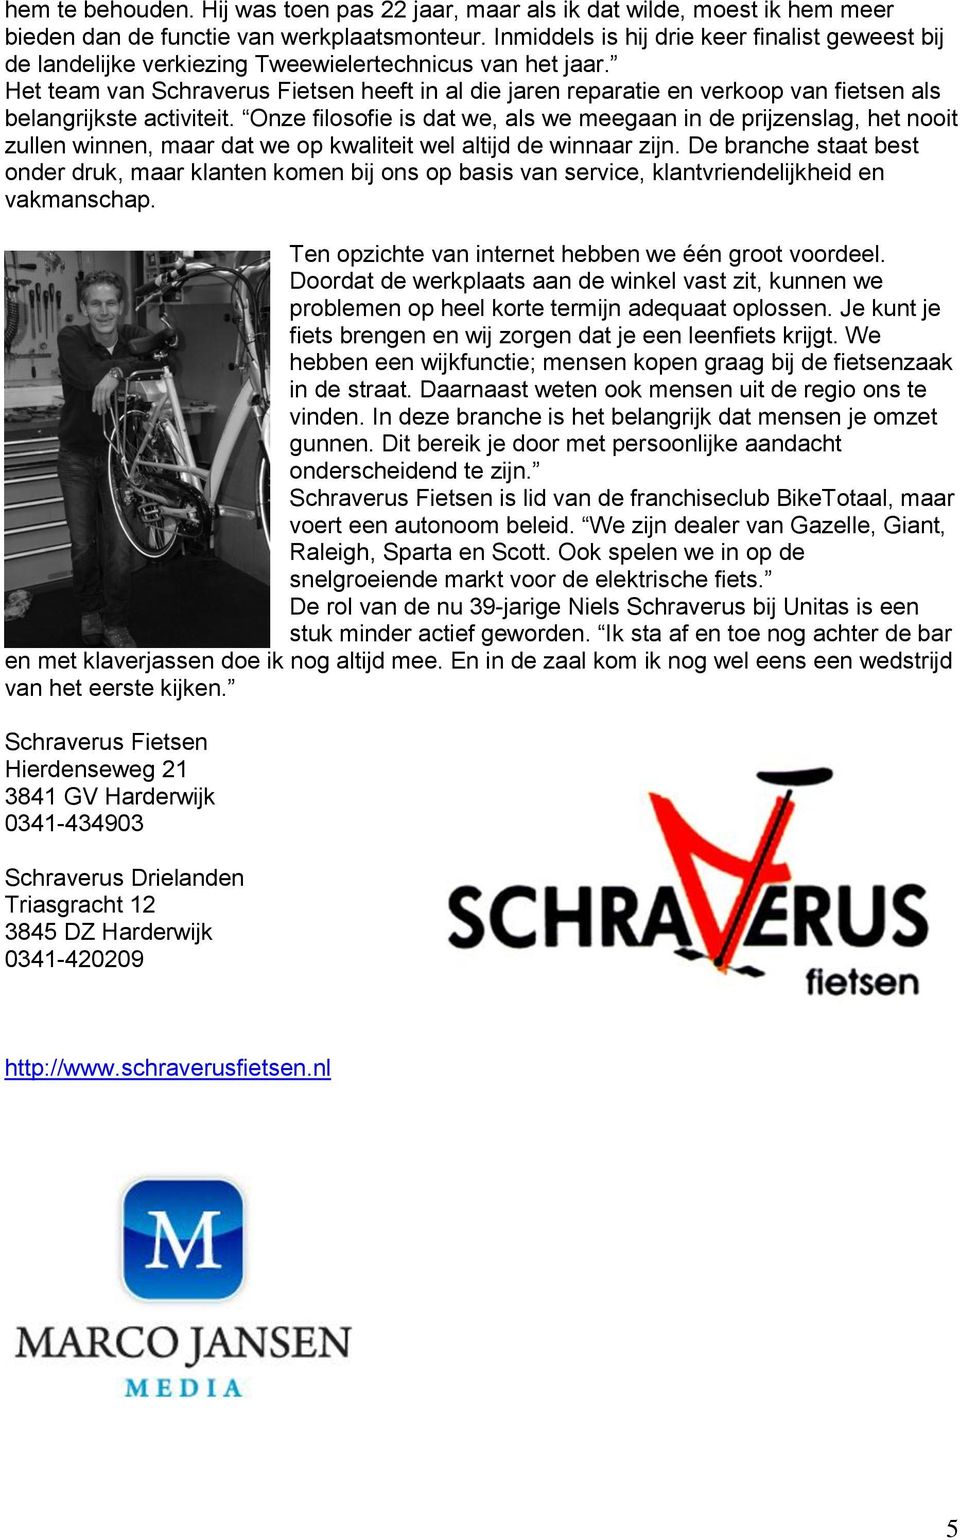 Het team van Schraverus Fietsen heeft in al die jaren reparatie en verkoop van fietsen als belangrijkste activiteit.